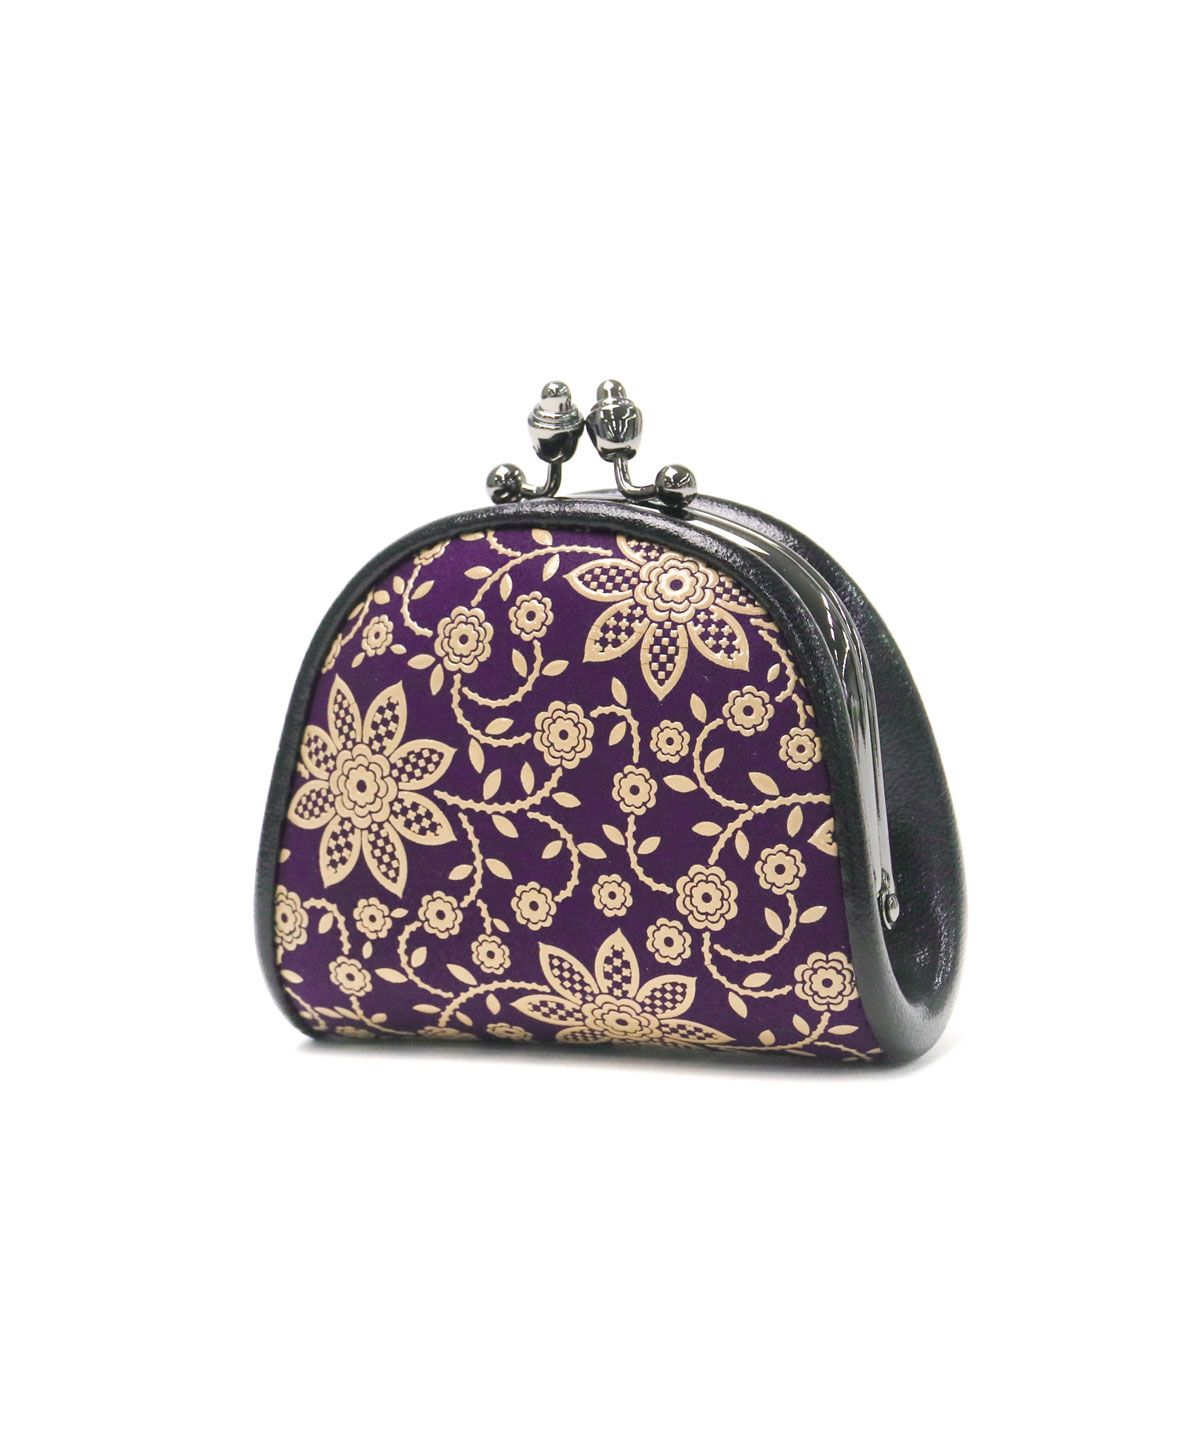 印傳屋 INDENYA 日本製 ショルダーバッグ保存袋付パープル紫レディース 鞄